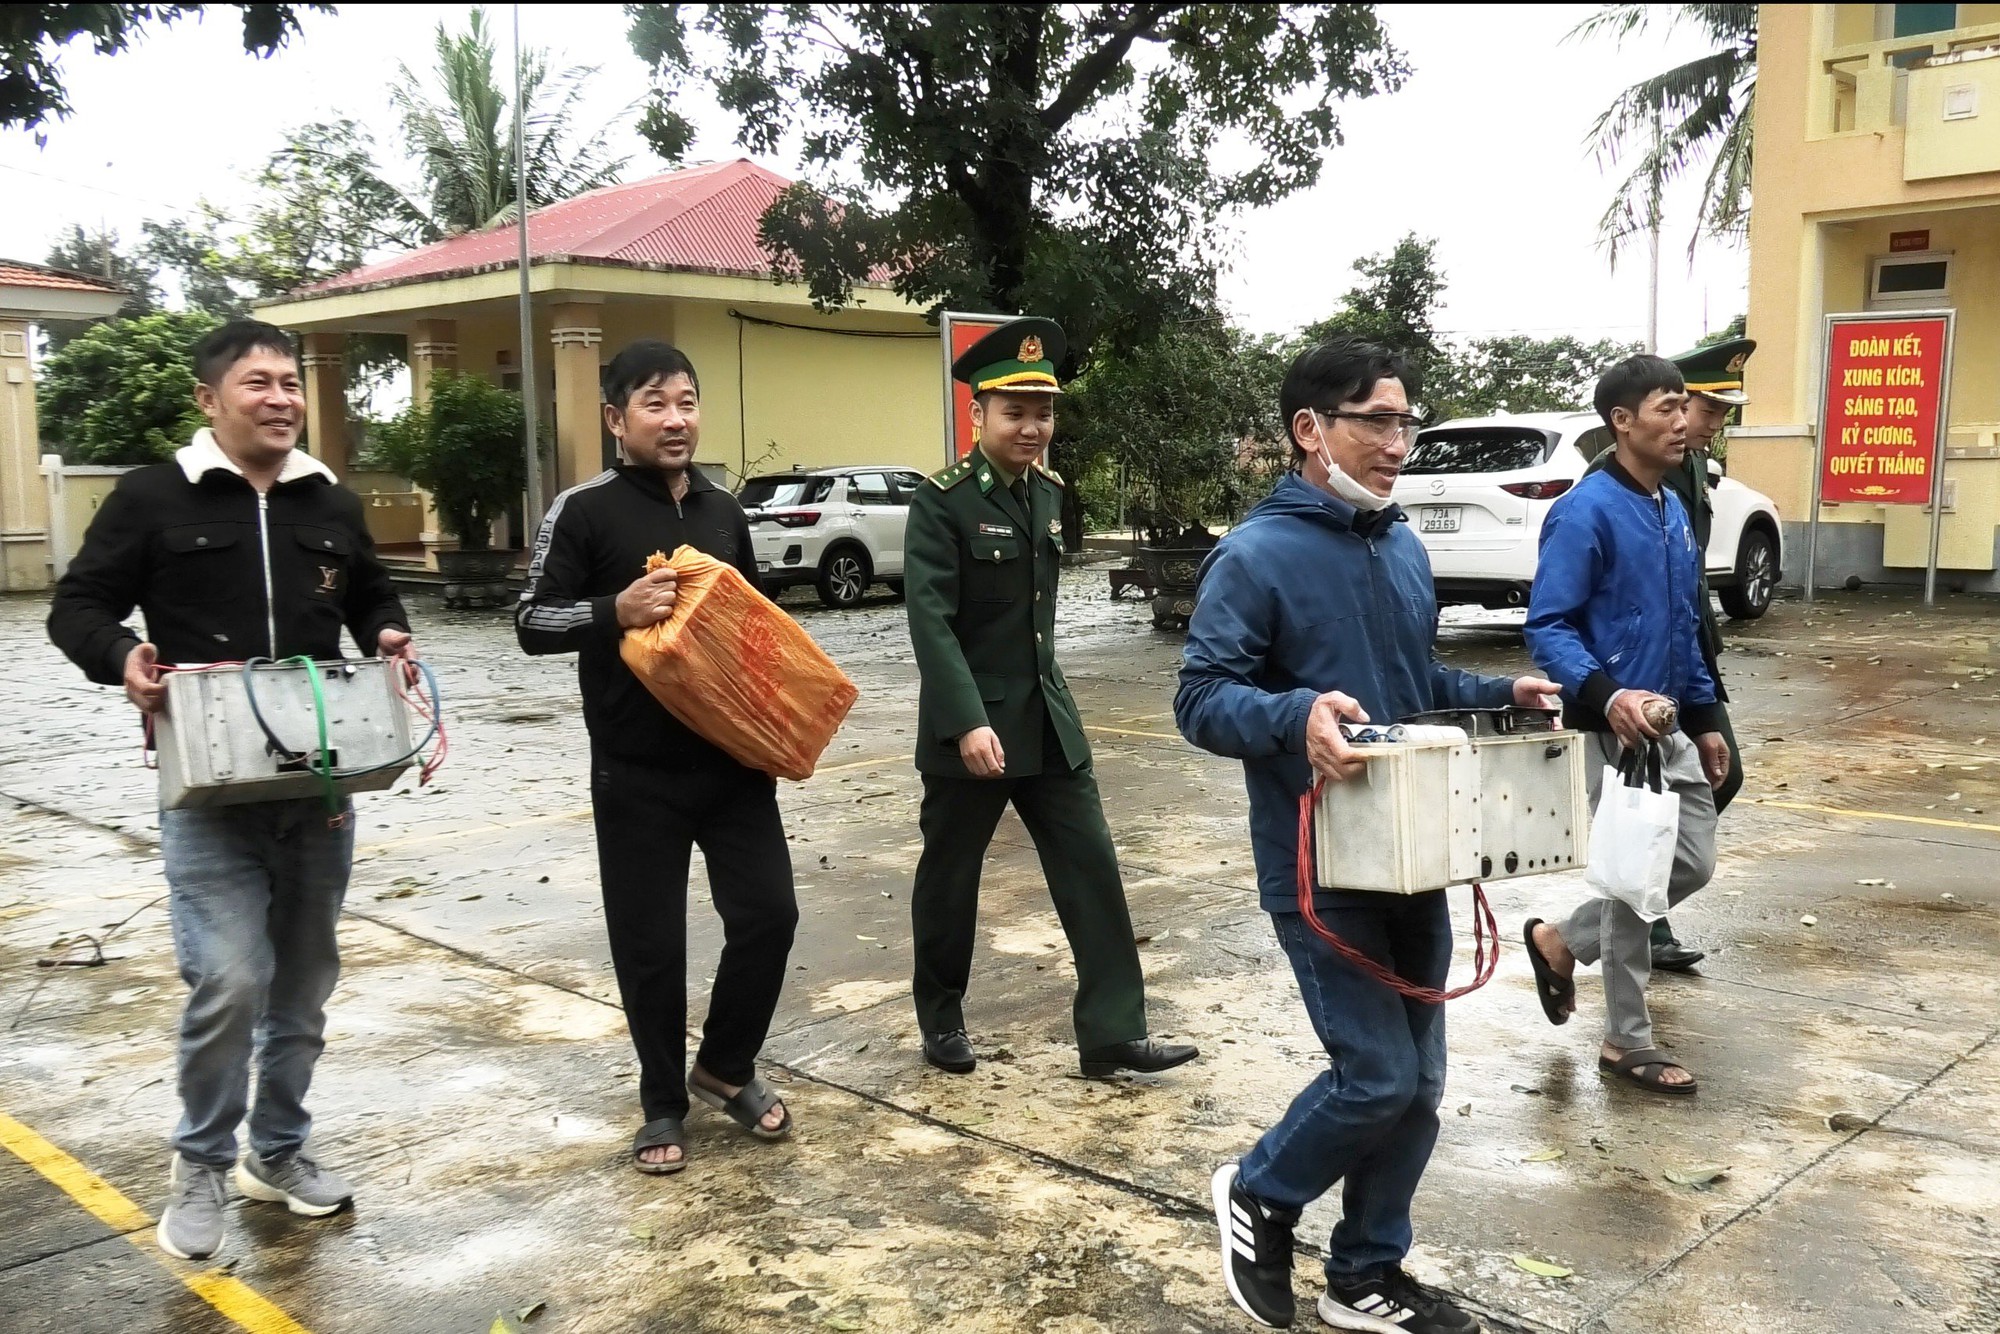 Quảng Bình: Ngư dân đến đồn biên phòng giao nộp pháo, thiết bị kích điện dùng trong khai thác hải sản- Ảnh 1.